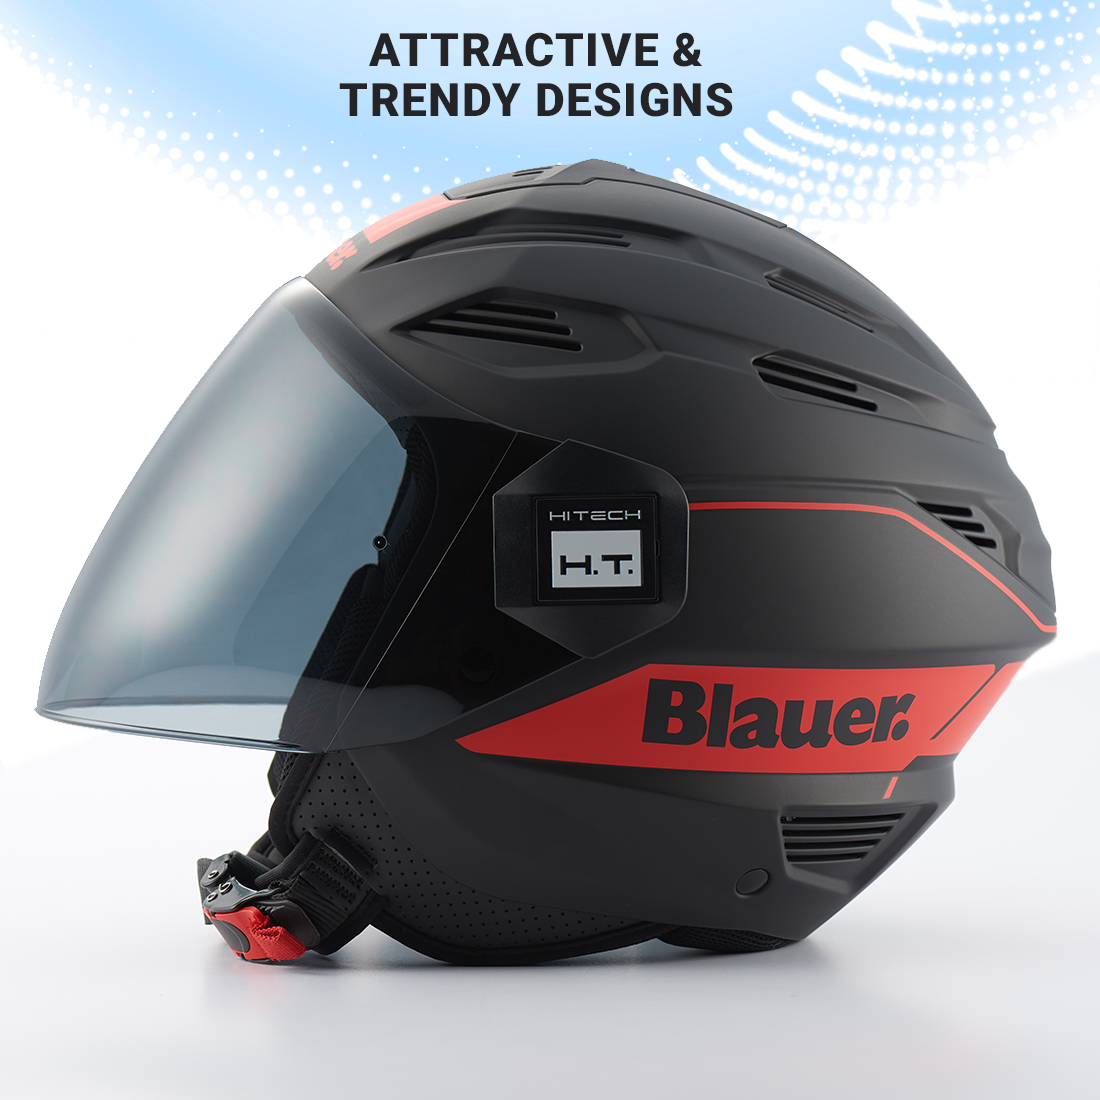 Steelbird Blauer Brat ISI/ECE Certified Open Face Helmet (Matt Black Red)